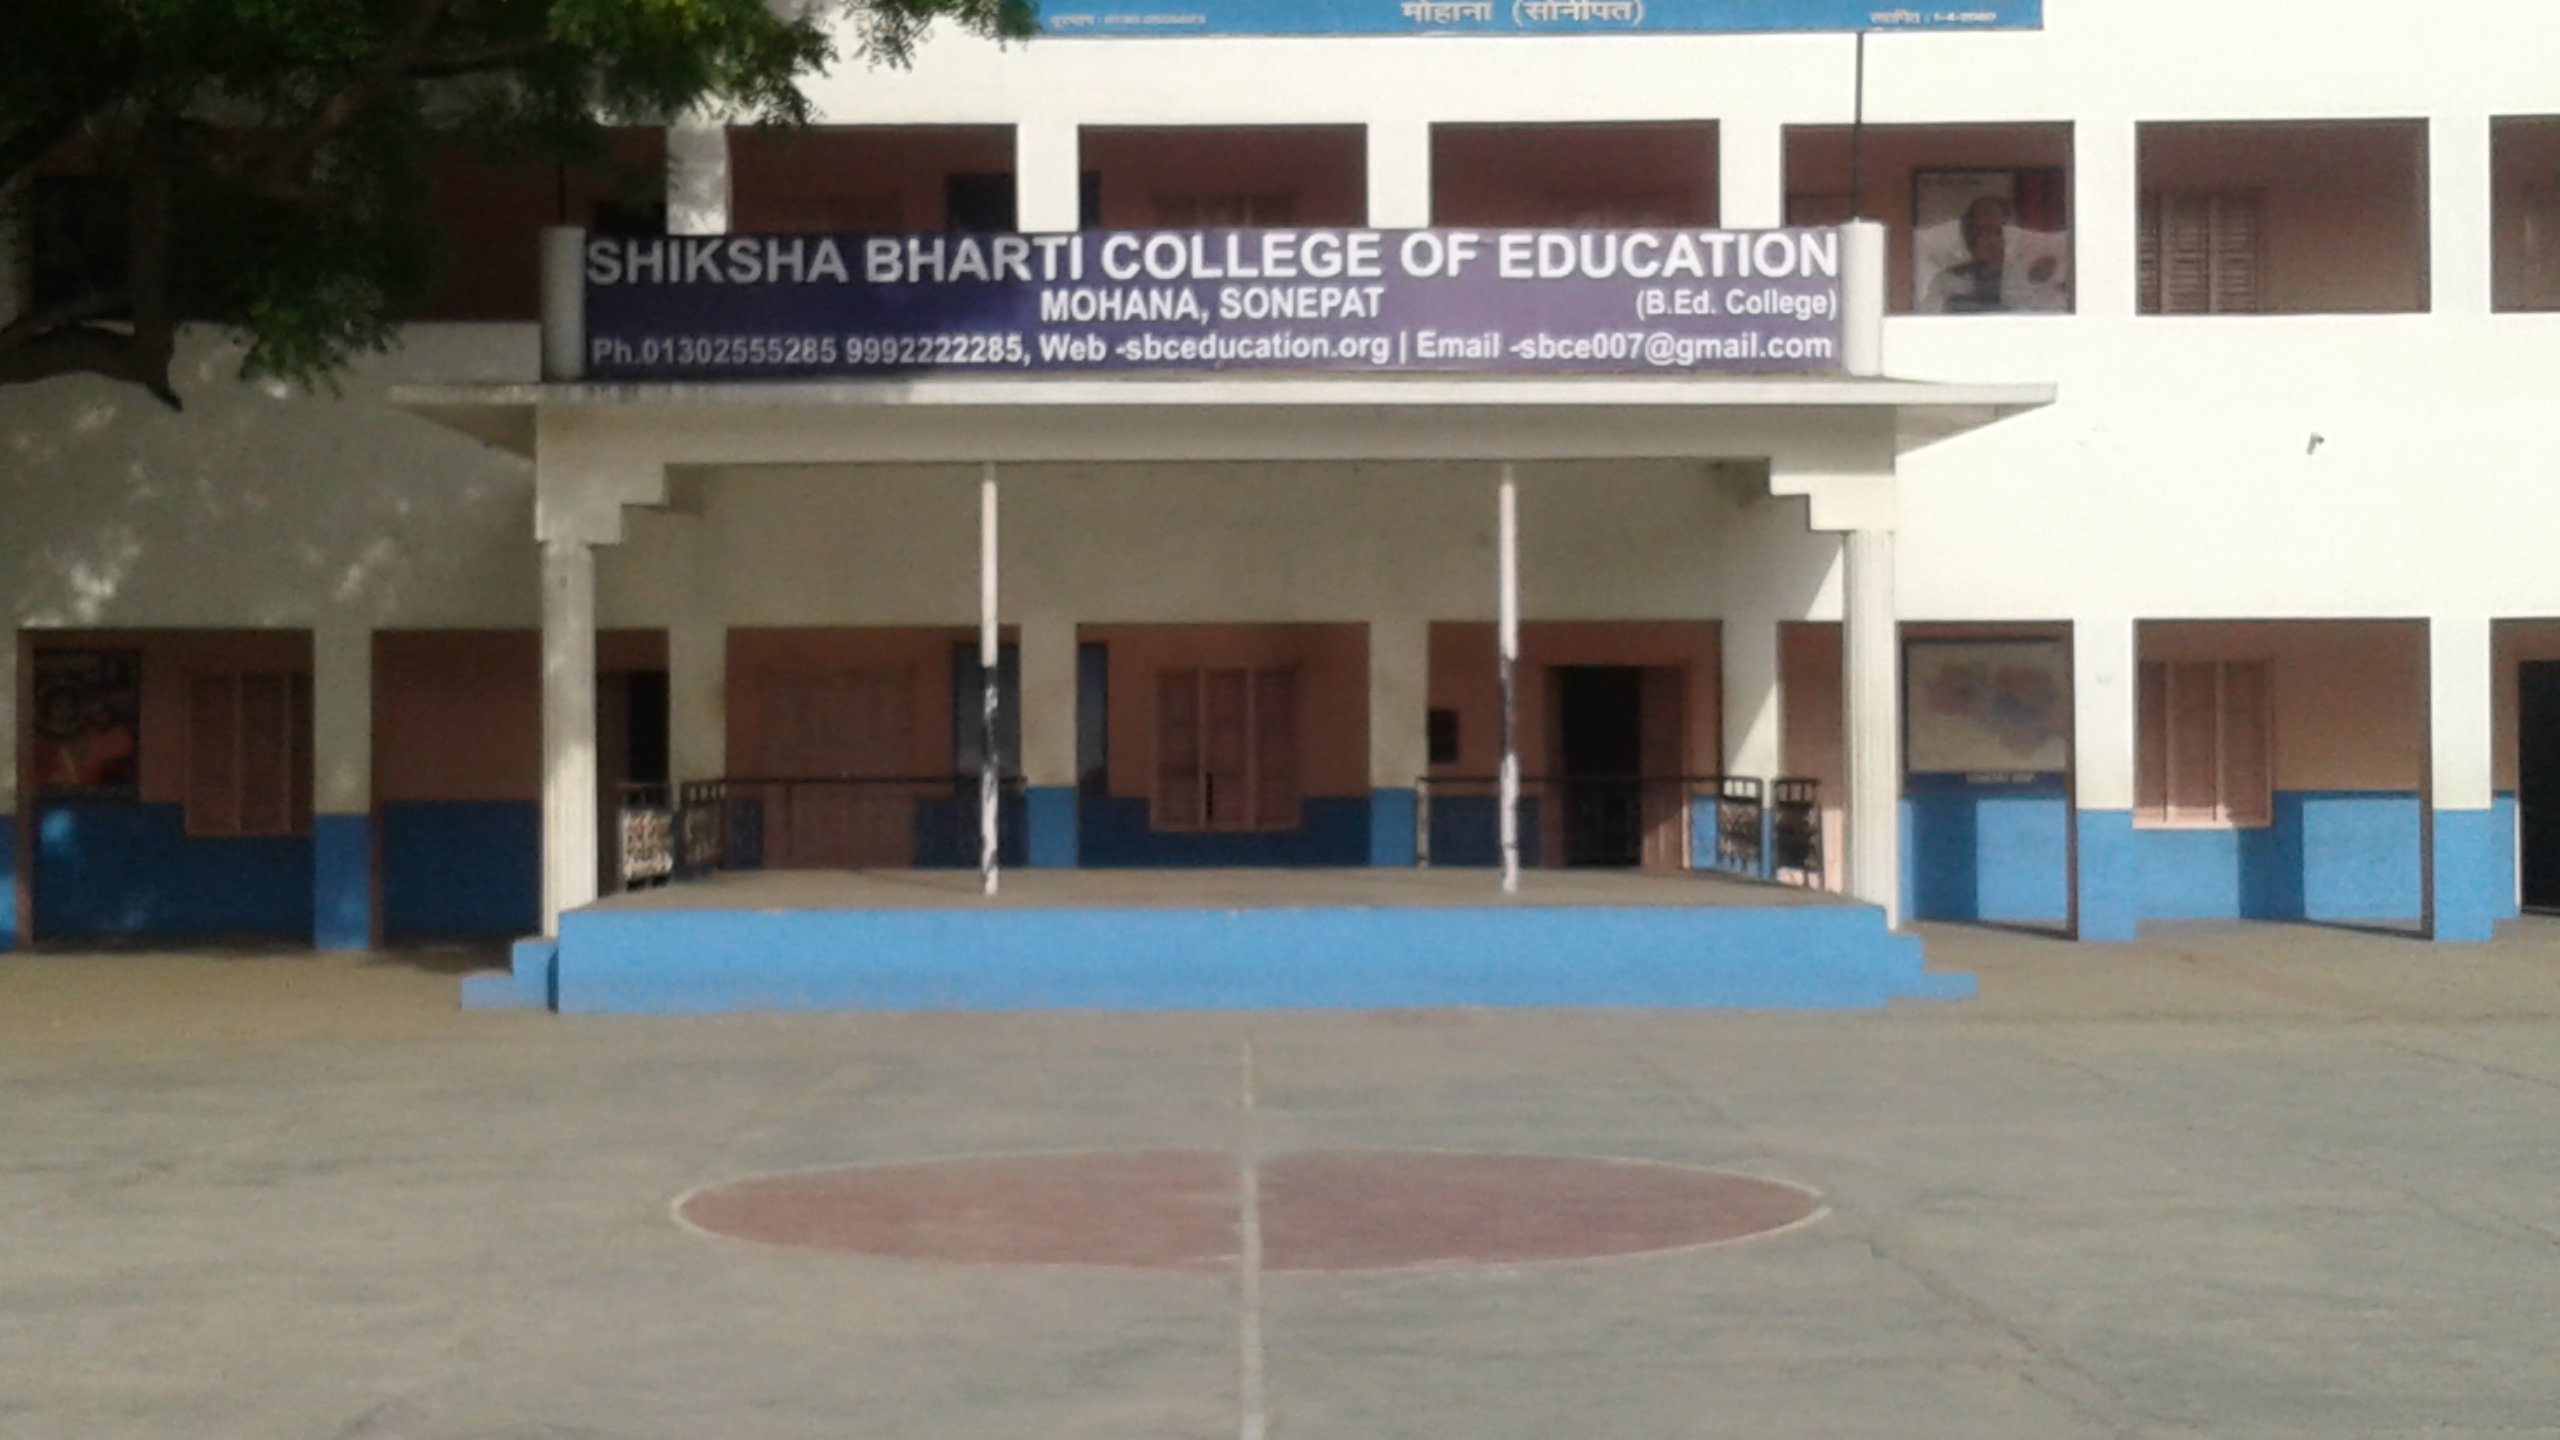 Shiksha Bharti College of Education